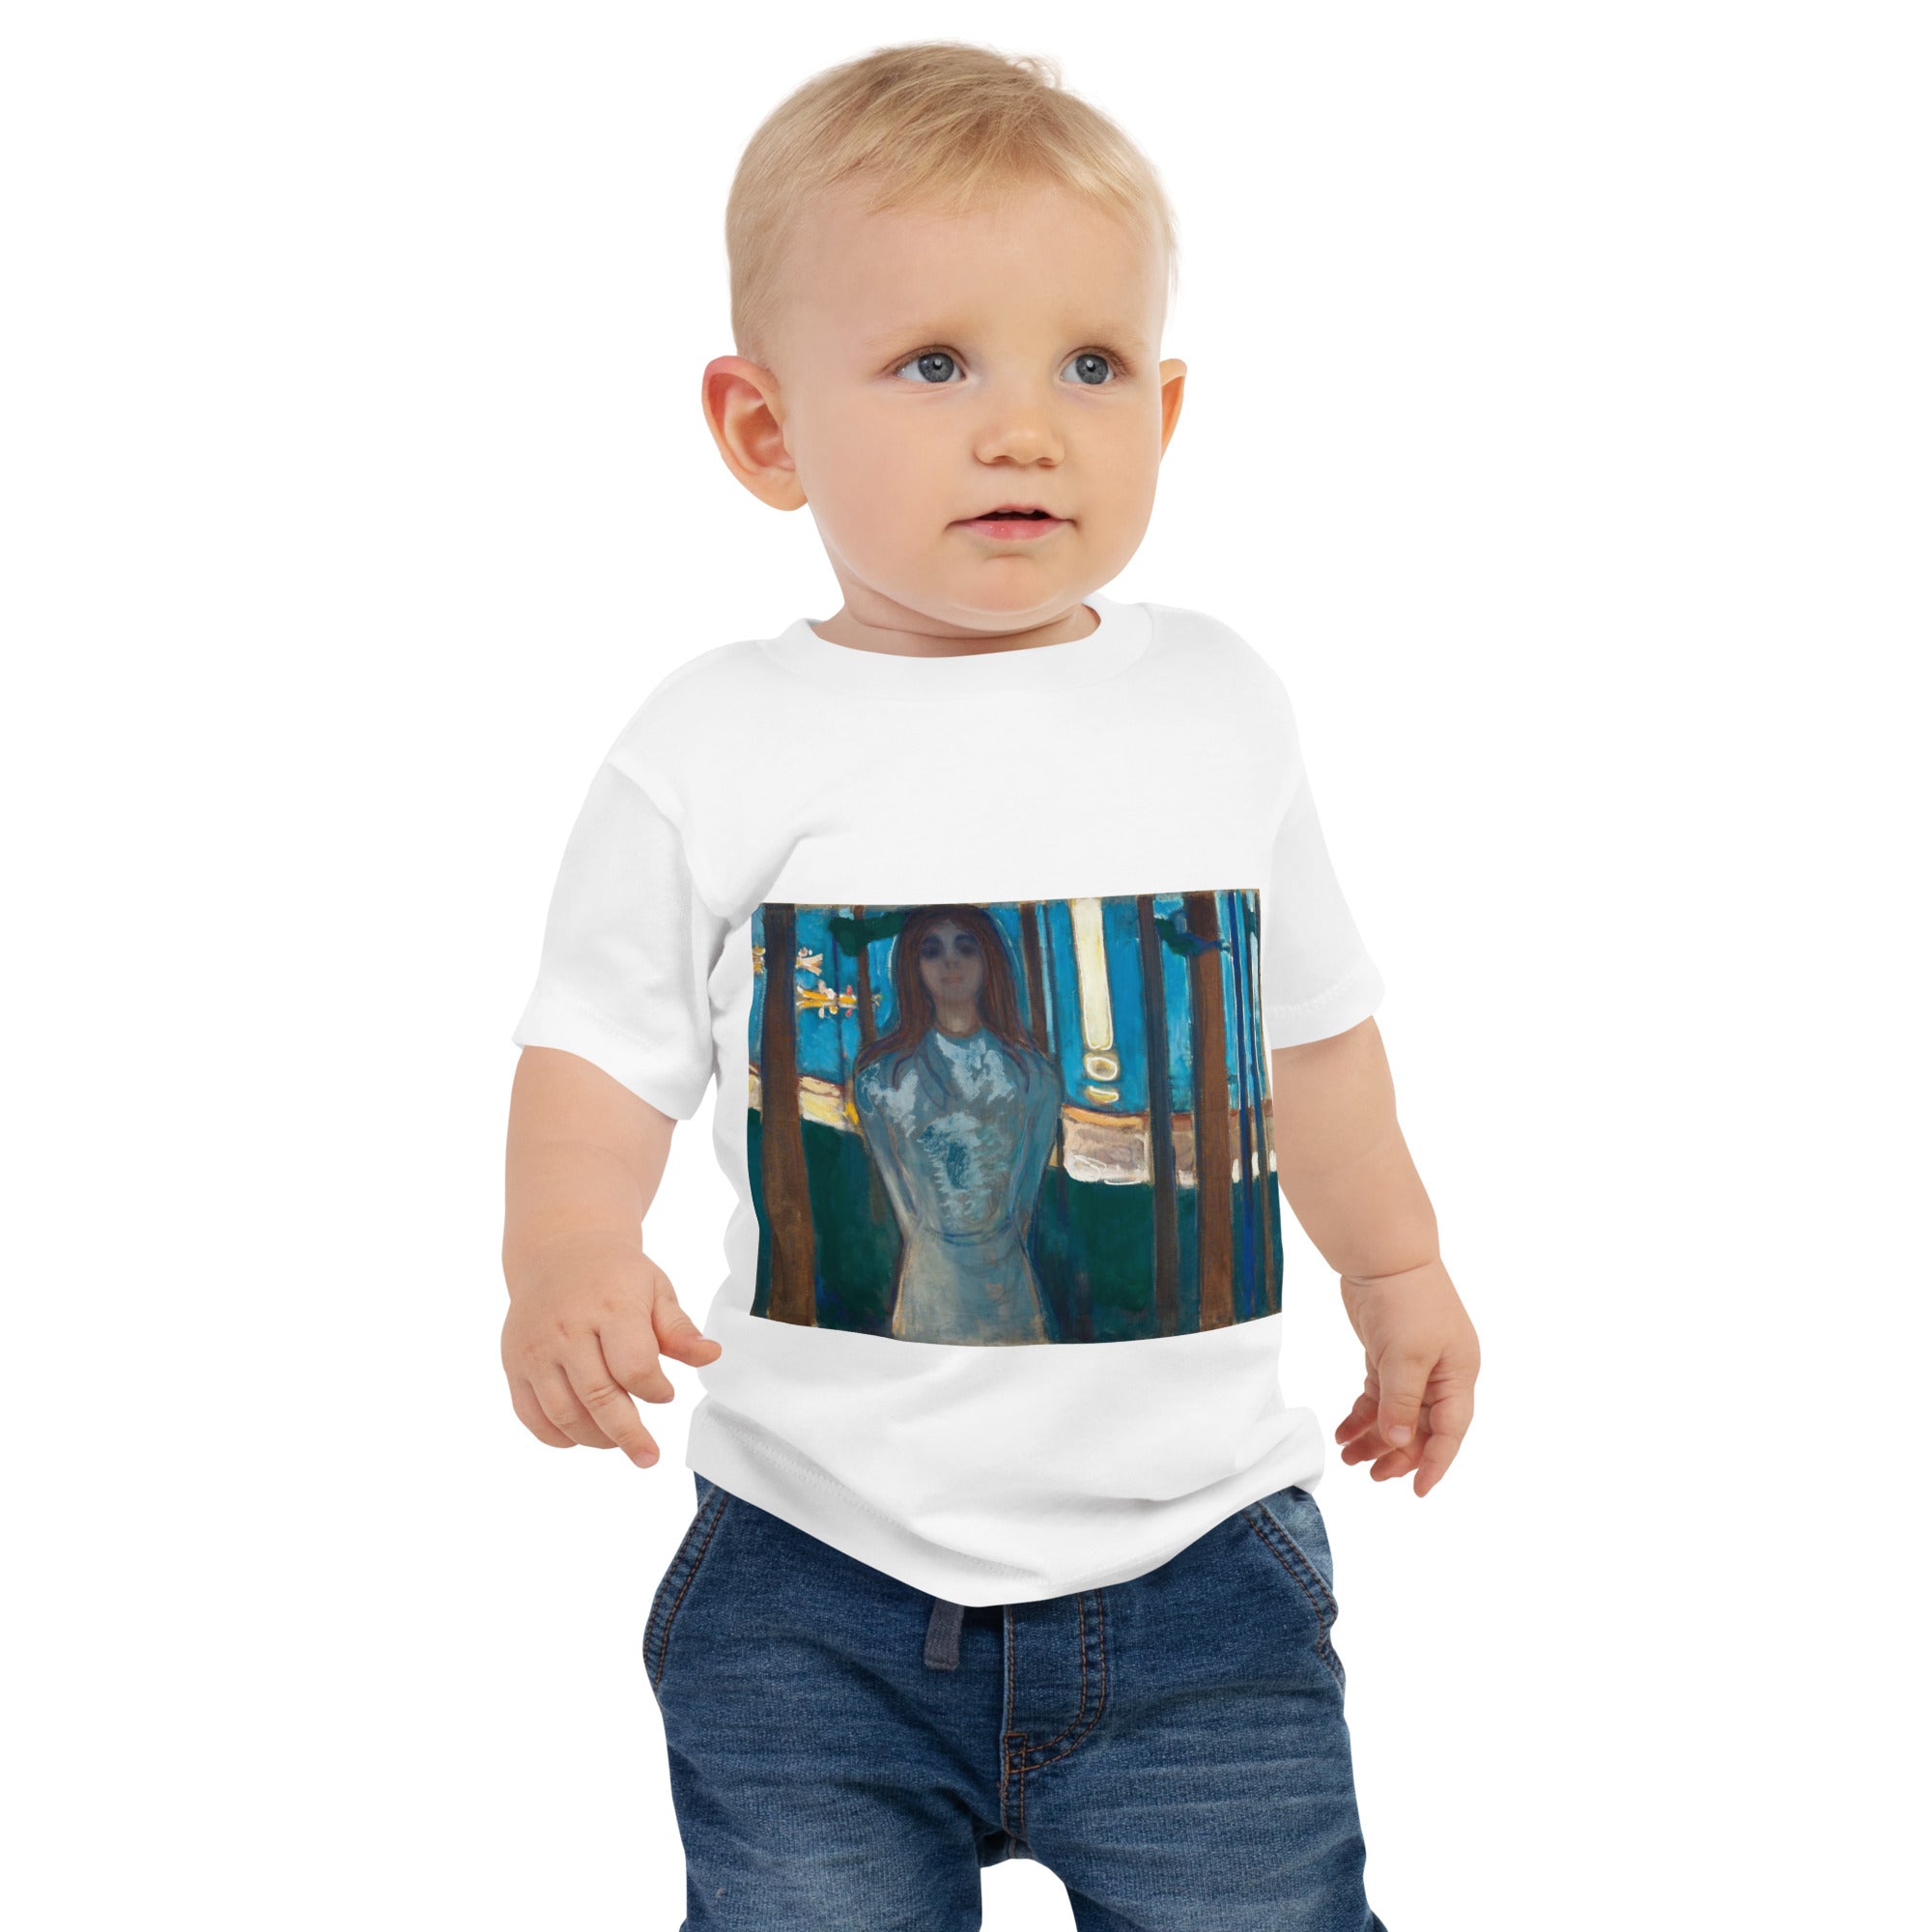 Edvard Munch 'The Voice, Summer Night' Famous Painting Baby Staple T-Shirt | Premium Baby Art Tee